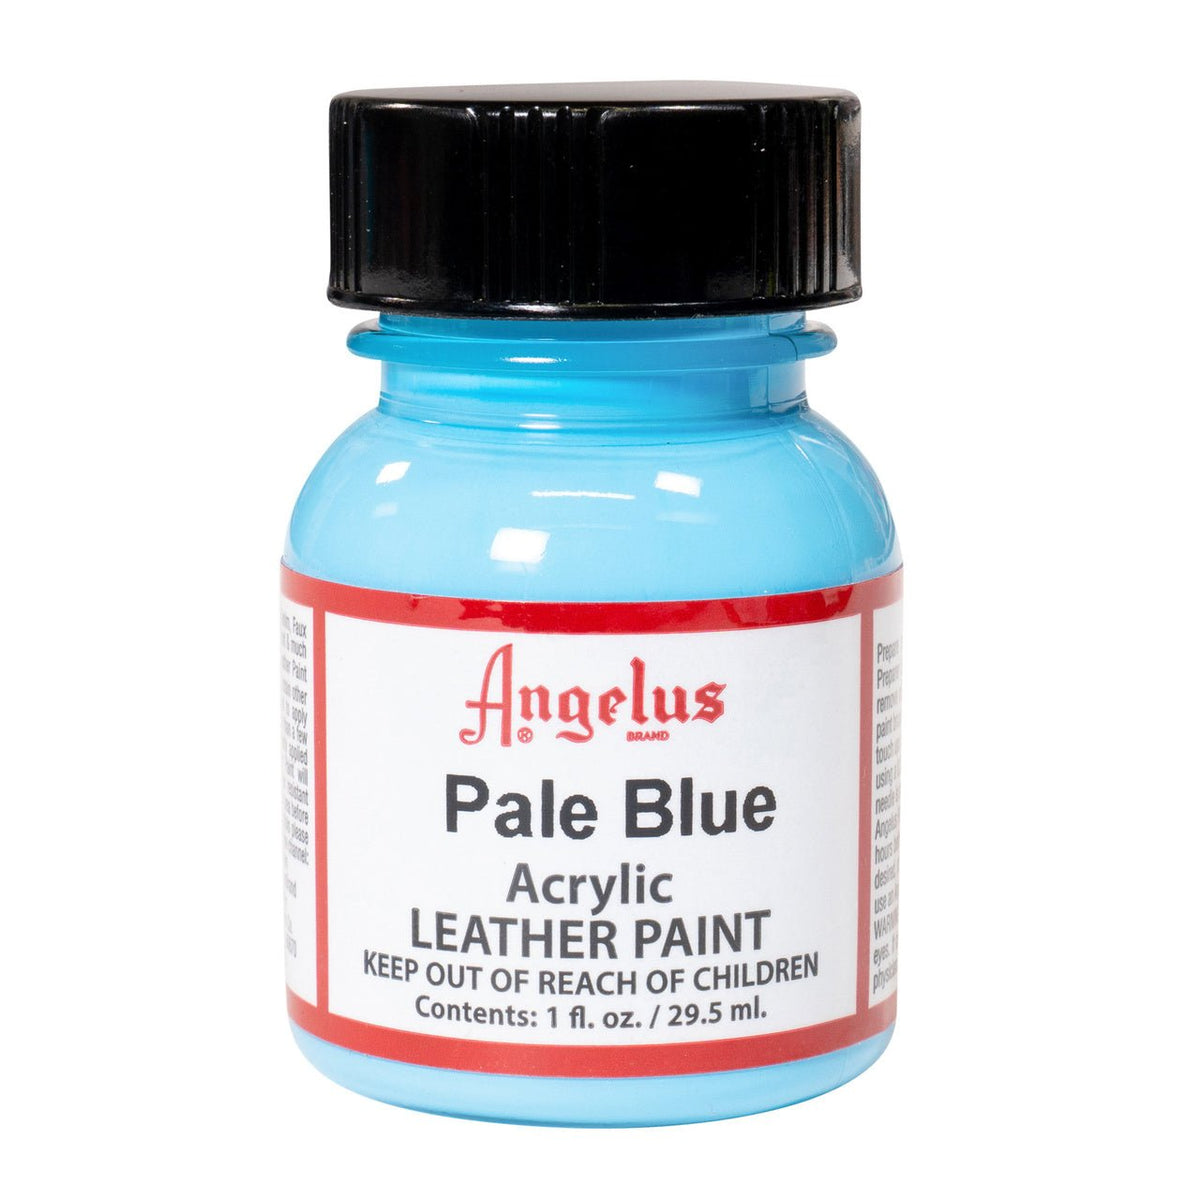 Angelus Acrylic Leather Paint - 1 oz. Bottle - Pale Blue - merriartist.com